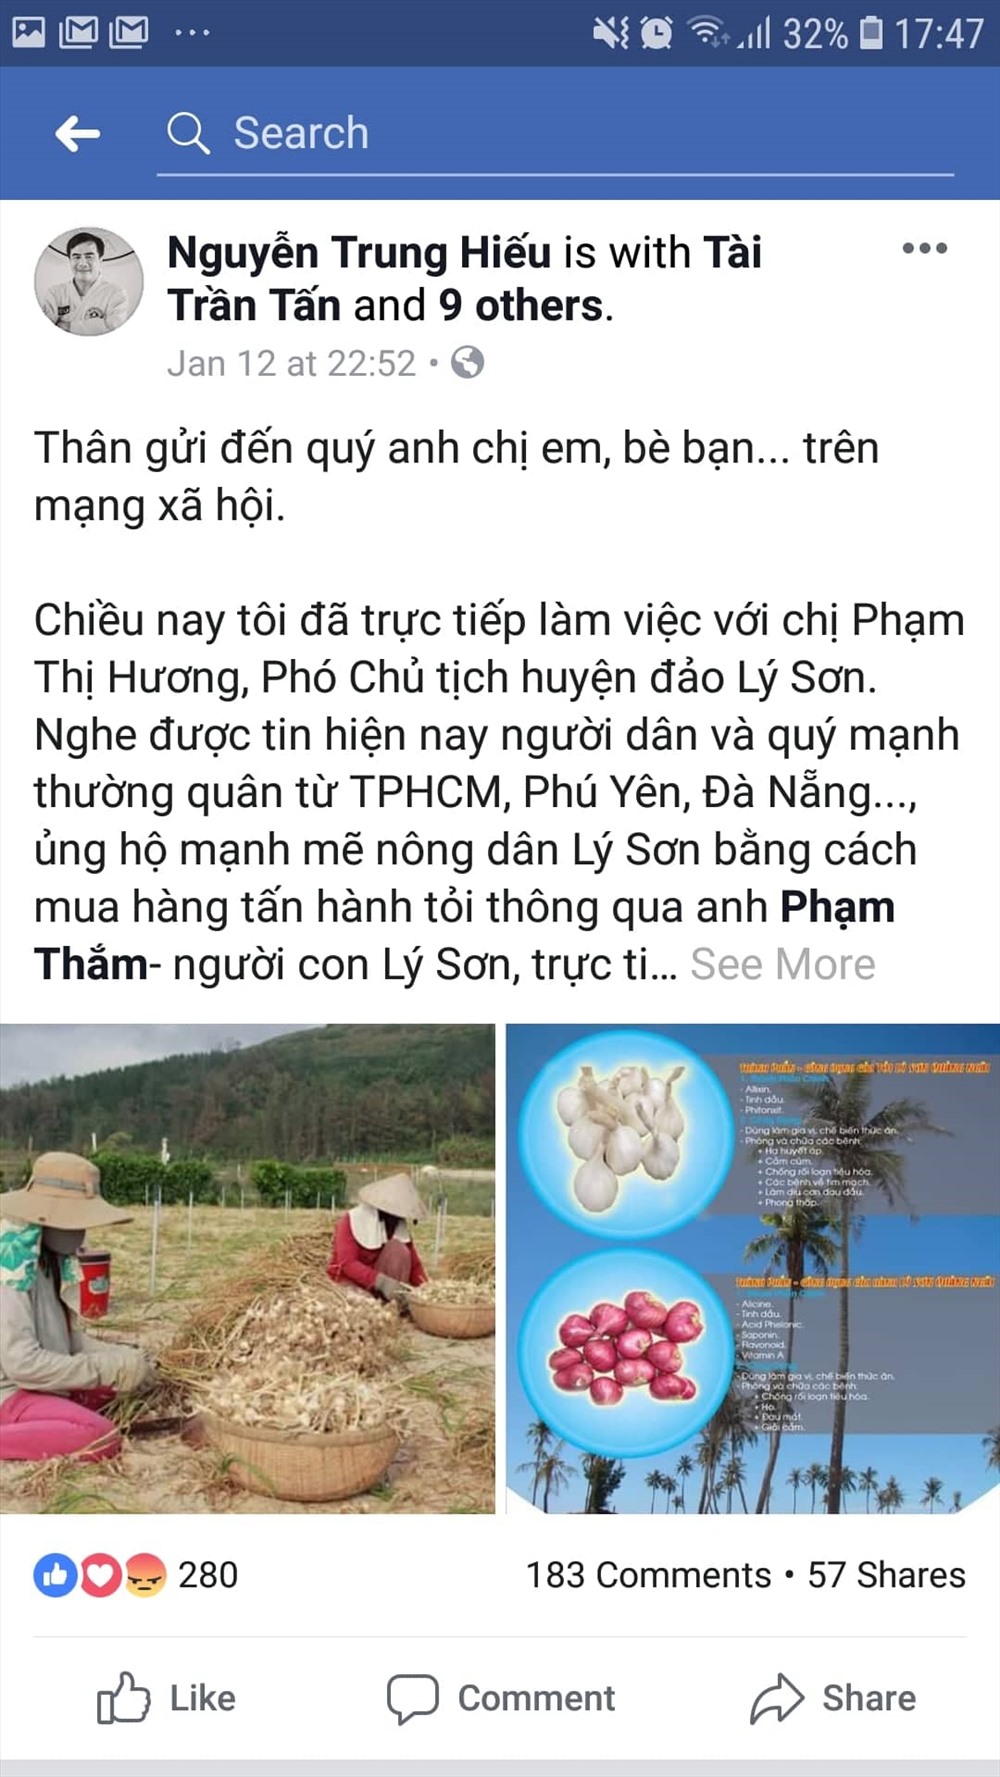 Anh Nguyễn Trung Hiếu kêu gọi hỗ trợ tiêu thụ hành, tỏi cho nông dân Lý Sơn trên facebook. (Ảnh chụp từ fb)